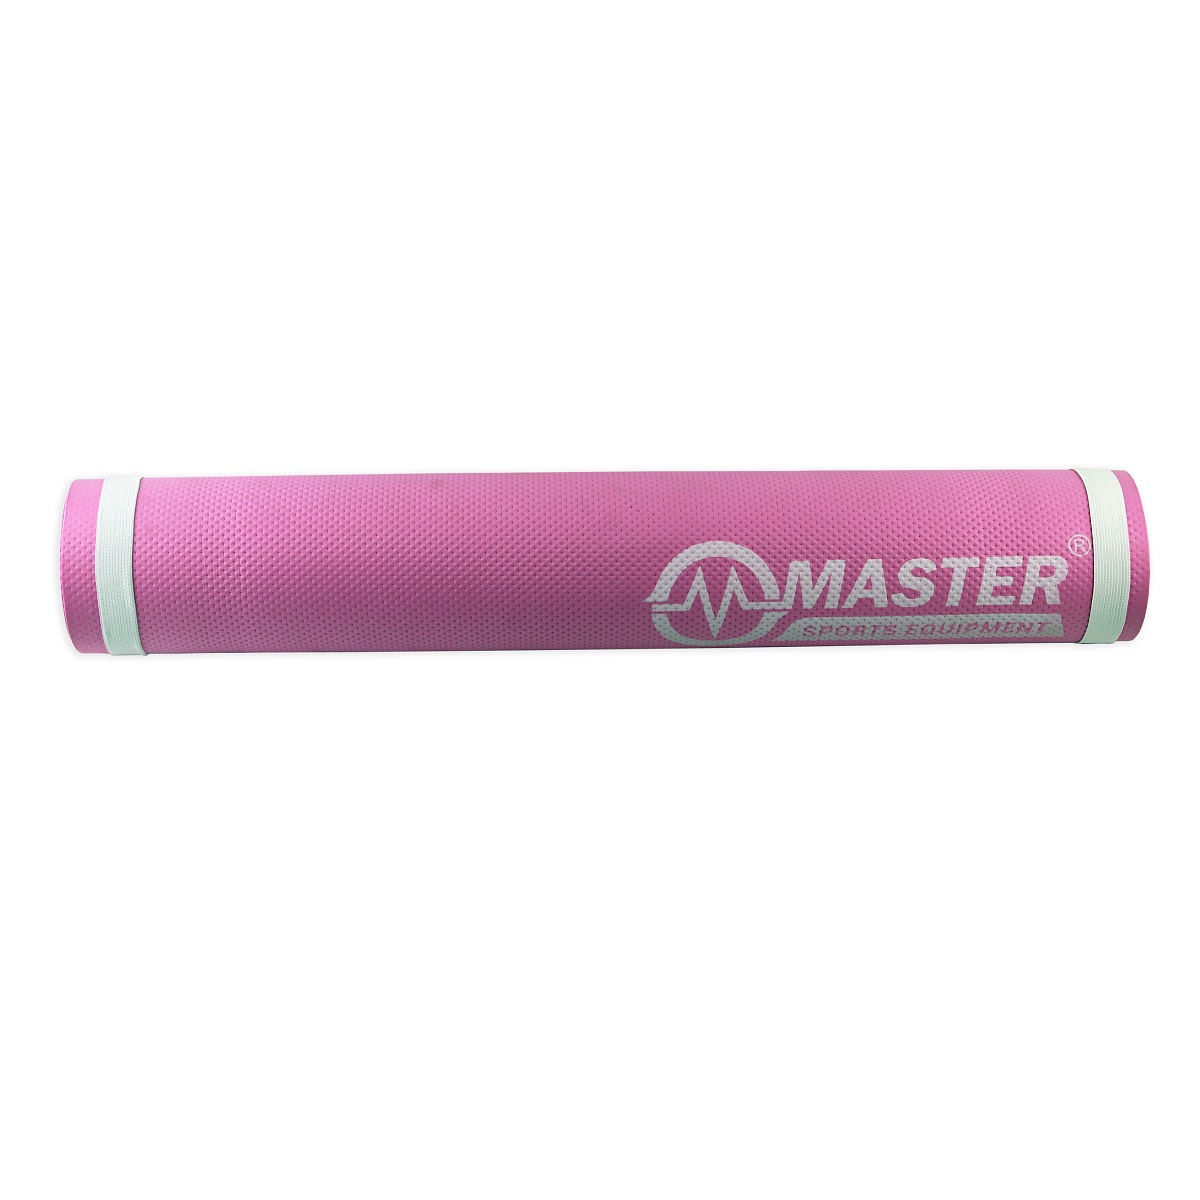  Podložka na cvičenie MASTER Yoga EVA 4 mm - 173 x 60 cm ružová